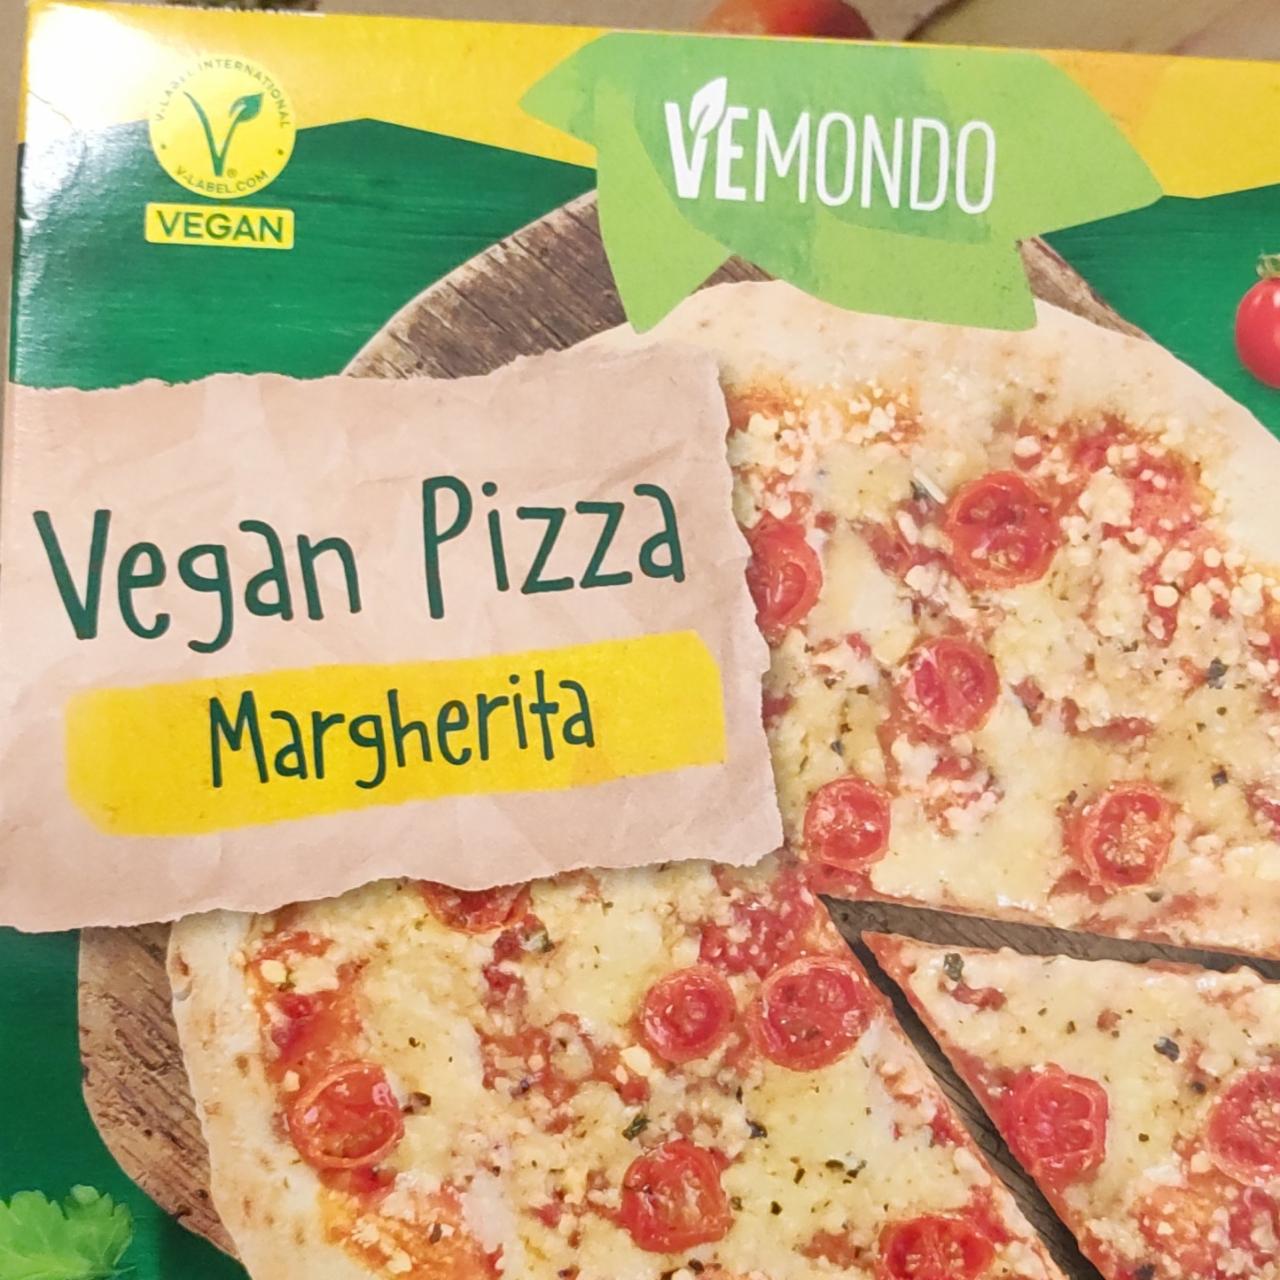 Zdjęcia - vegan pizza margherita Vemondo 